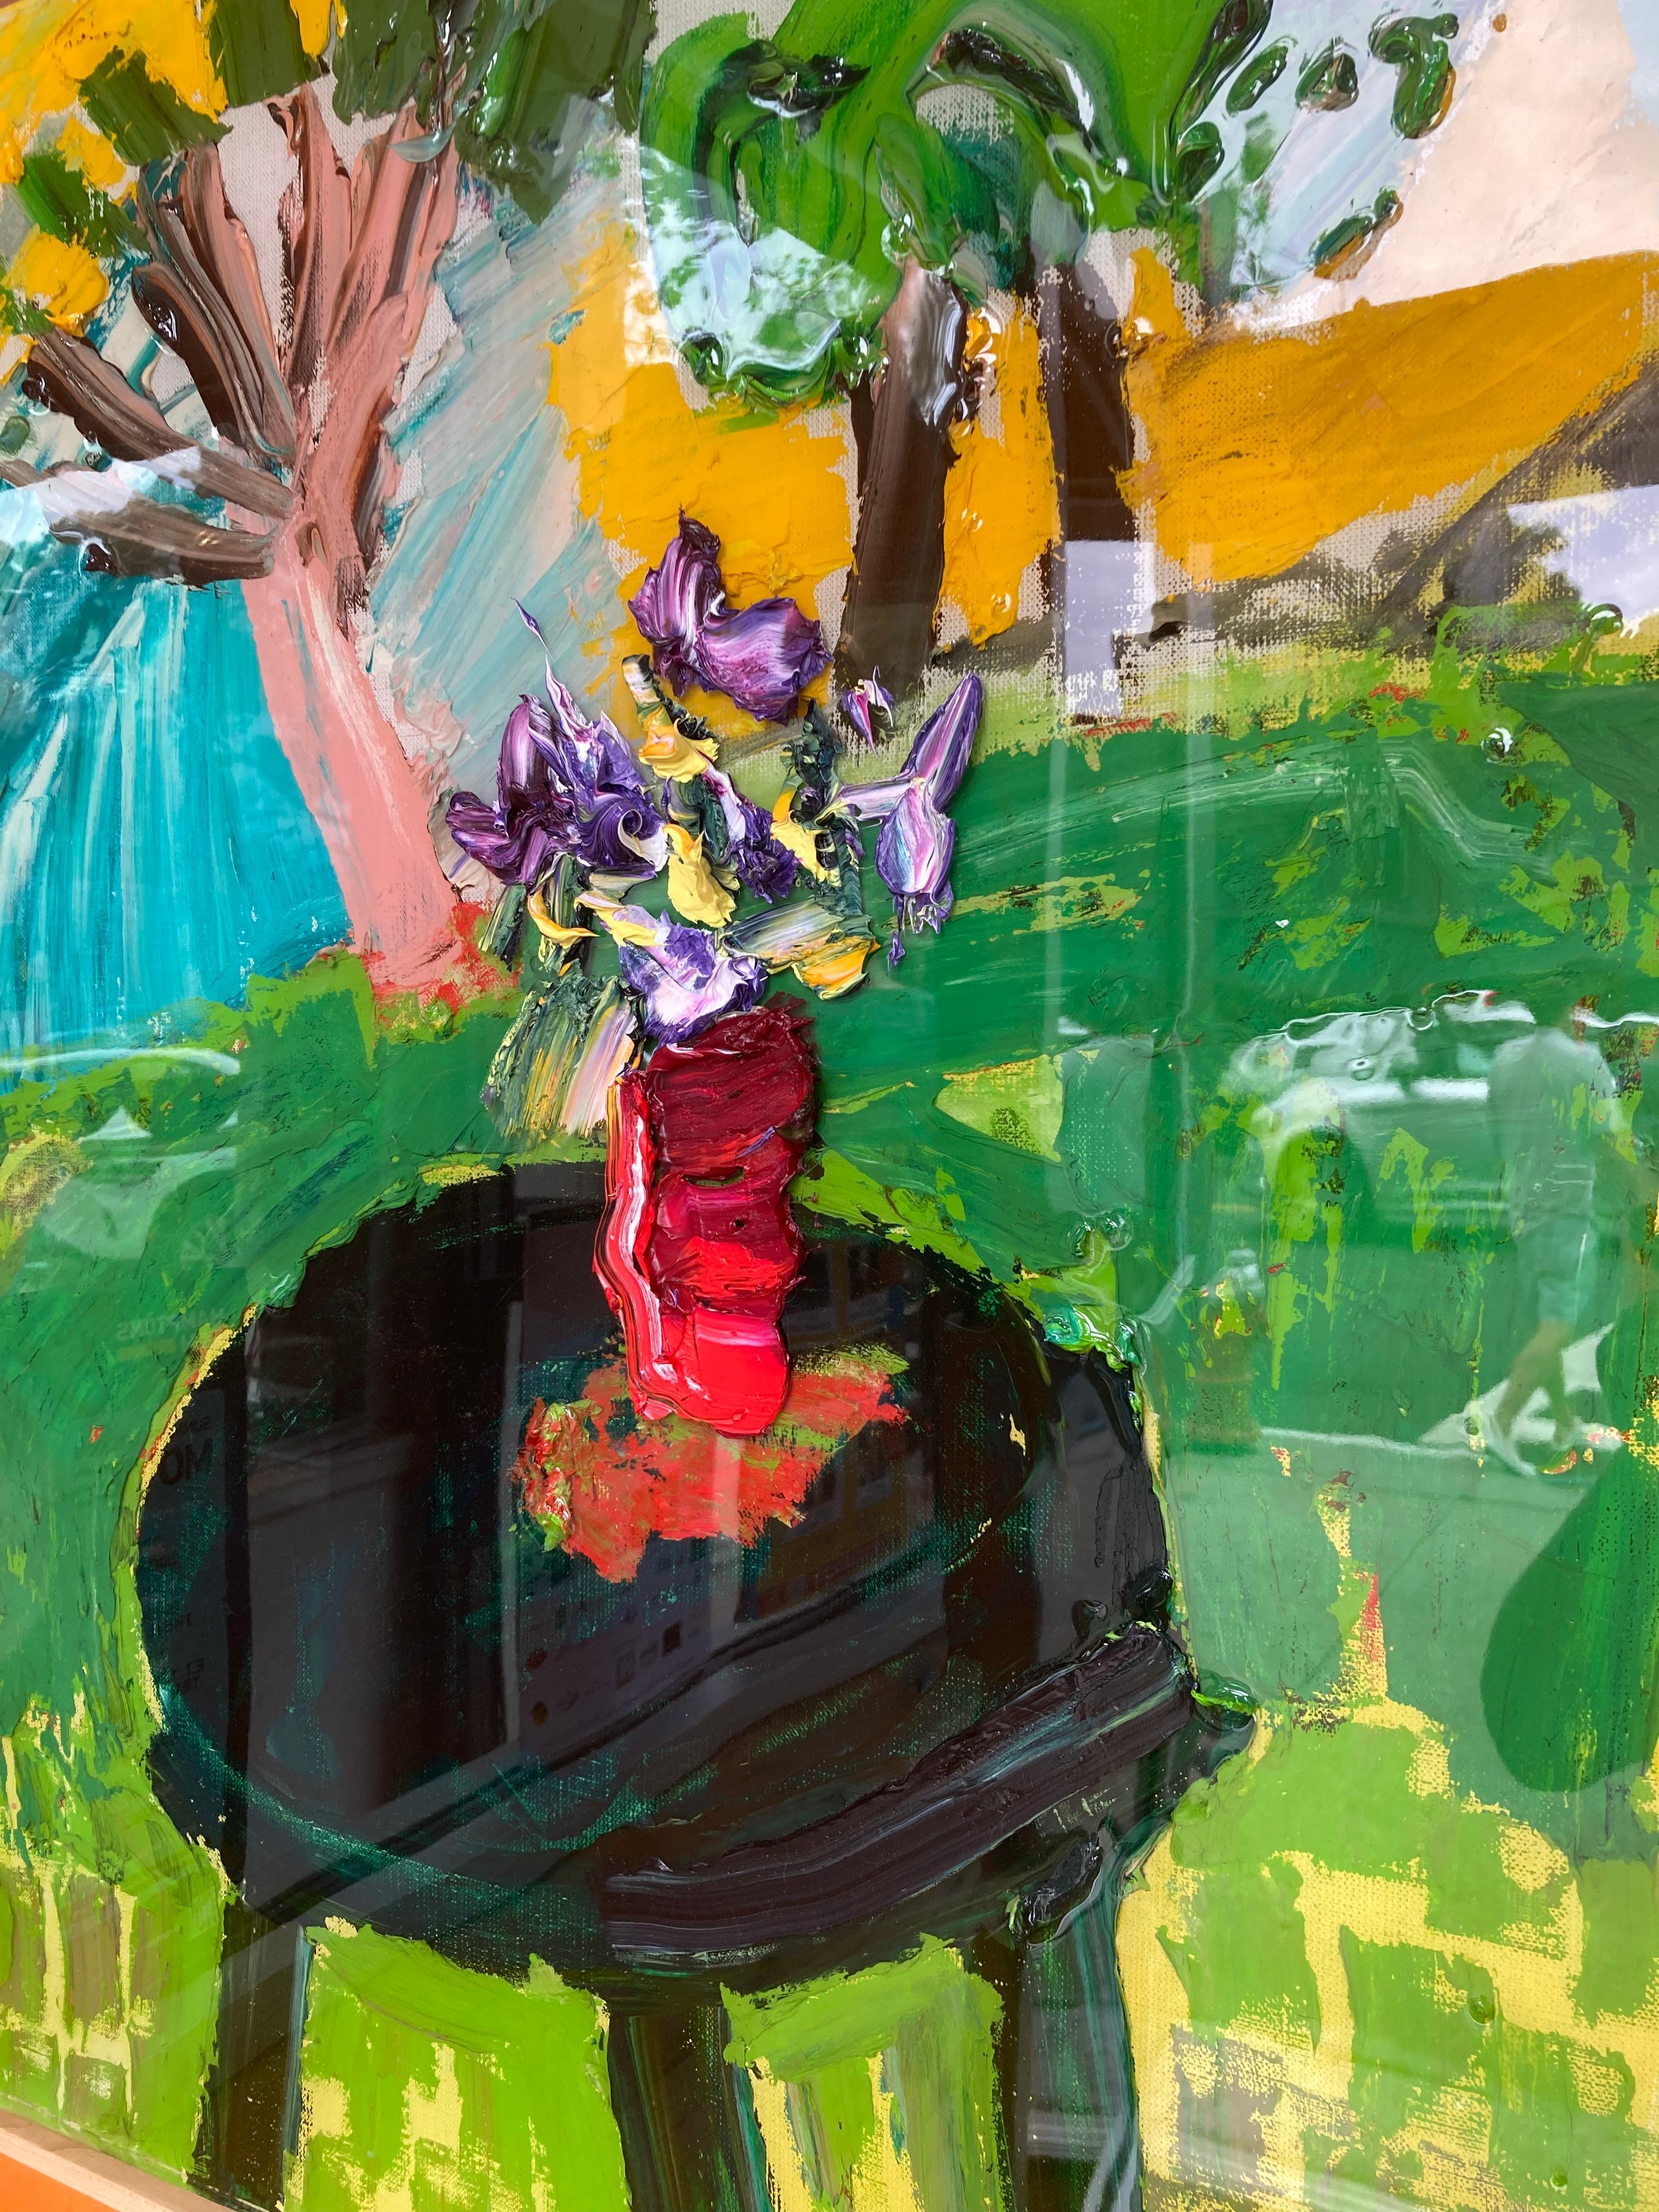 In seiner neuesten Serie von Blumenbildern kreiert Yektai ein beliebtes Motiv, auf das er immer wieder zurückkommt: ein schwarzer Tisch vor einer hellen Landschaft. Dieses besondere Gemälde ist mit einer dicken Harzschicht überzogen, die wie bei